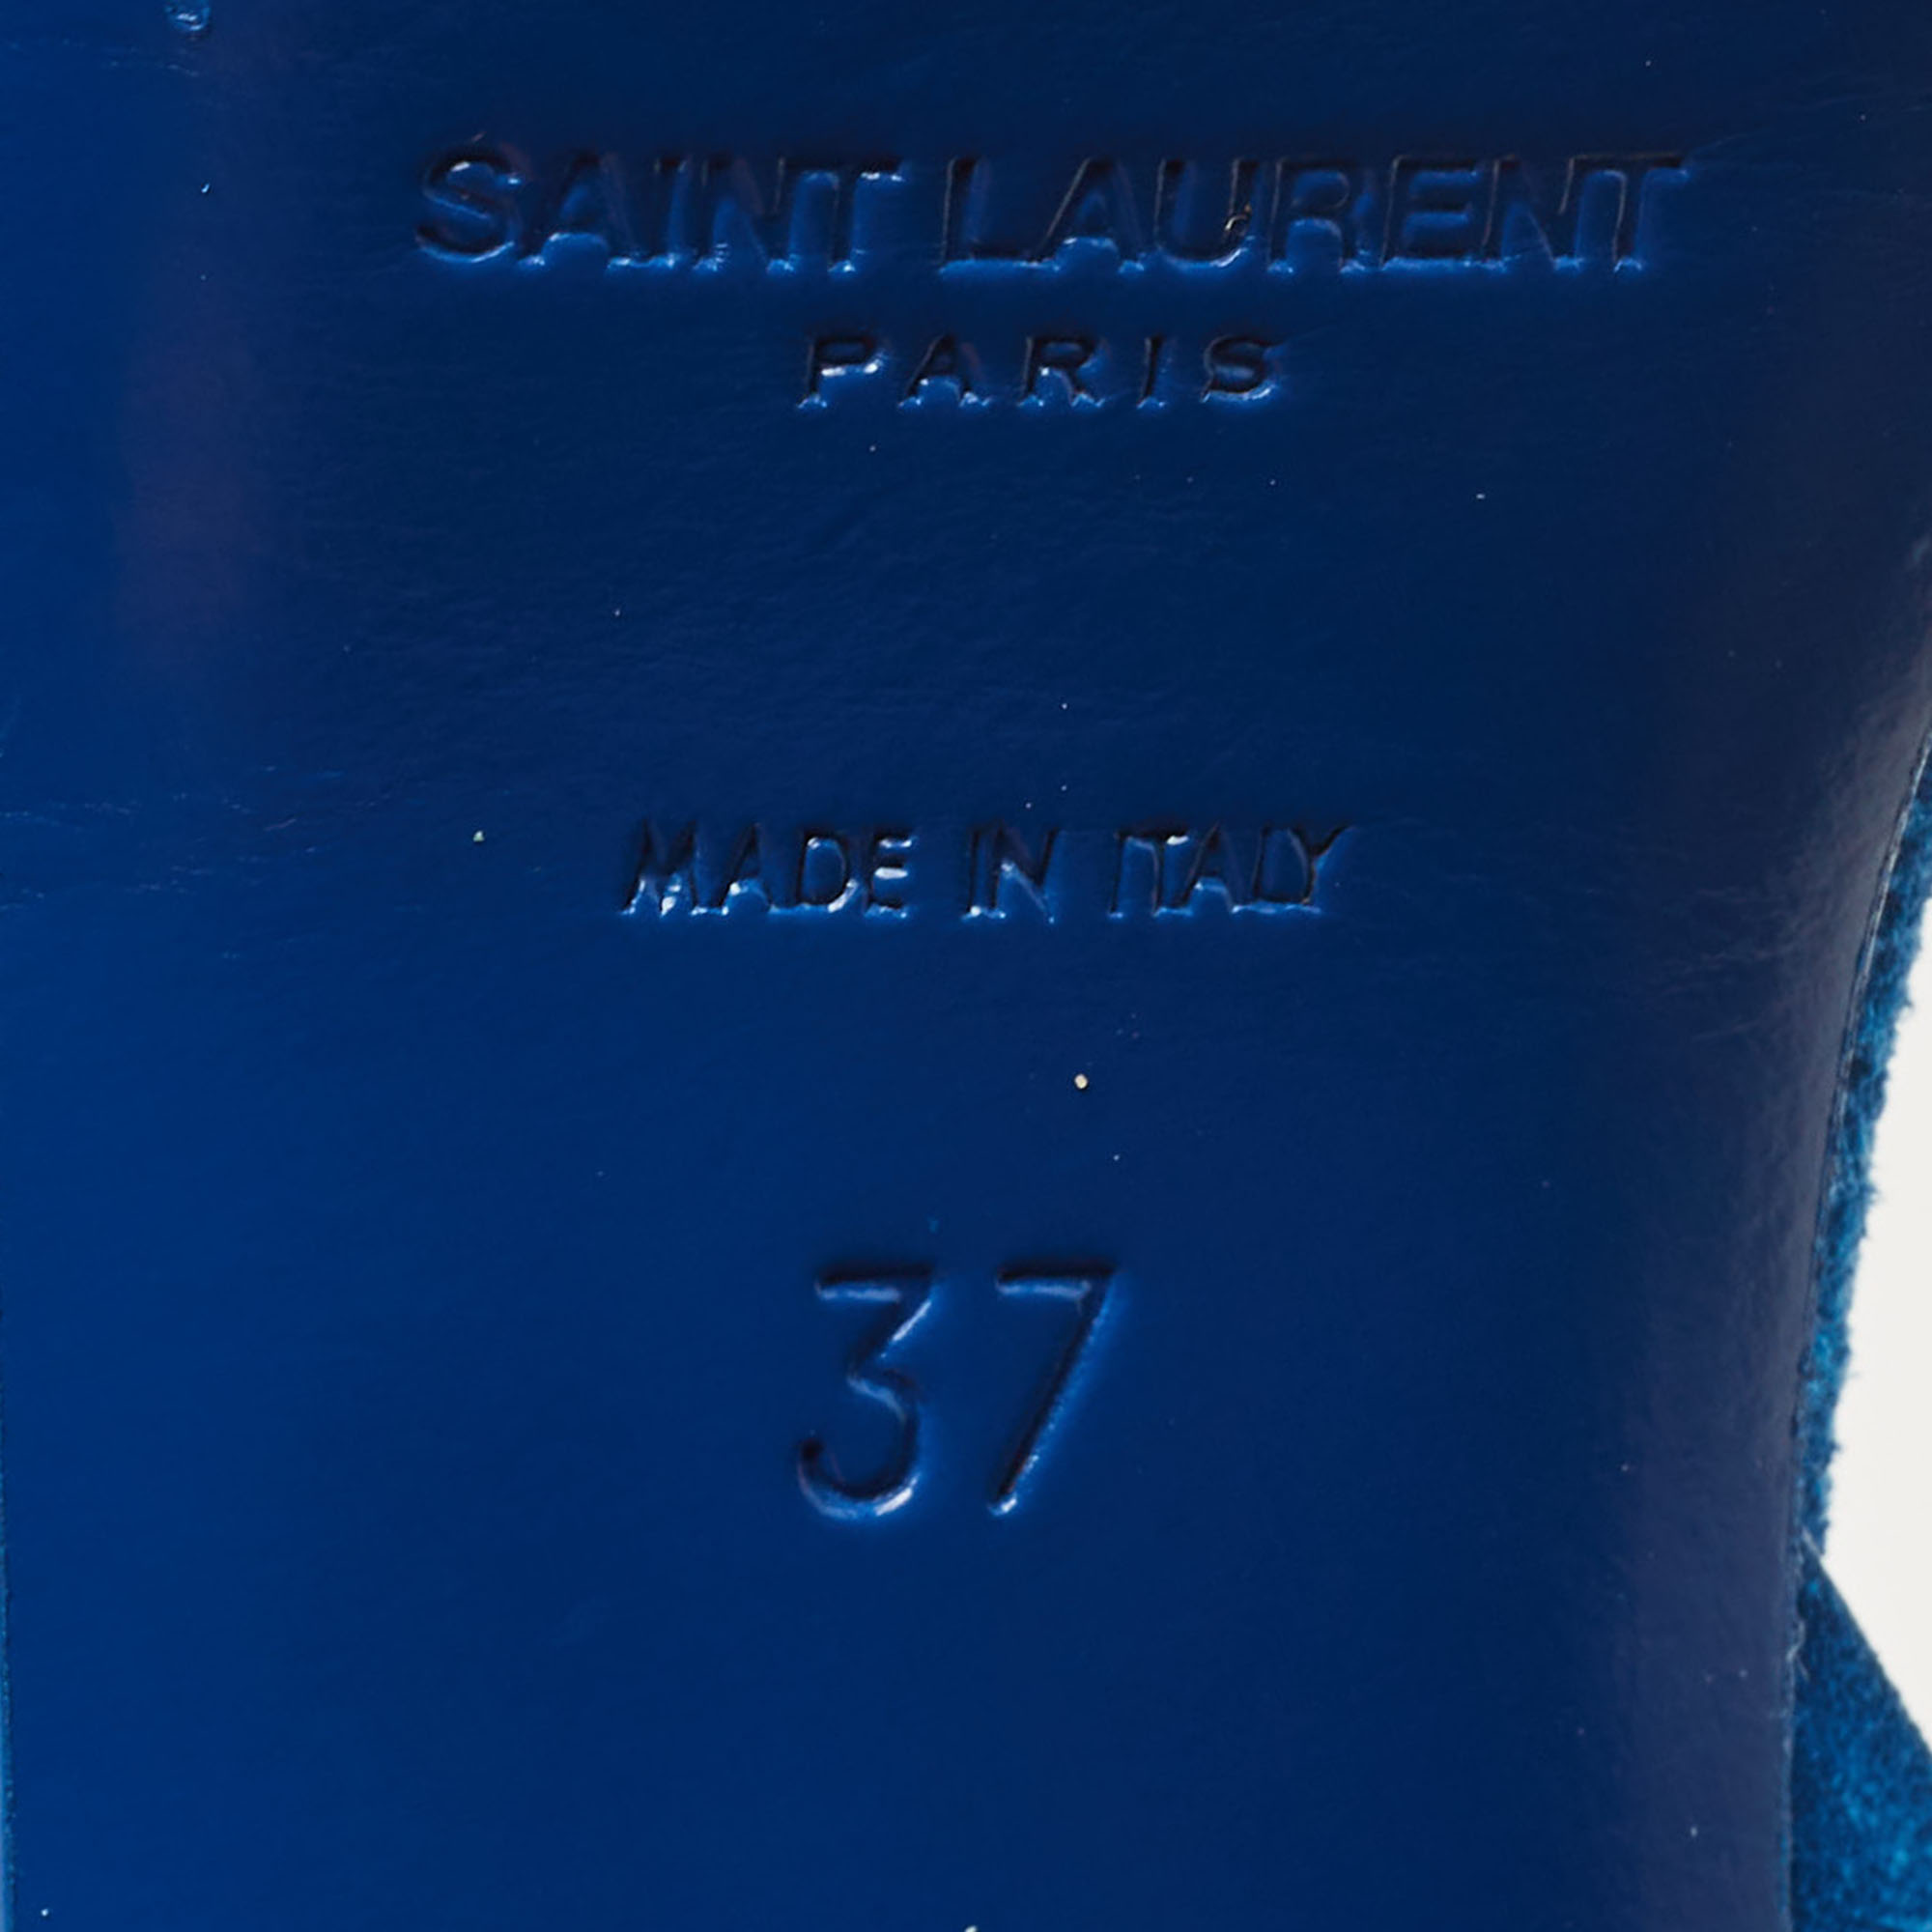 Saint Laurent Blue Suede Tribute Ankle Strap Sandals Size 37